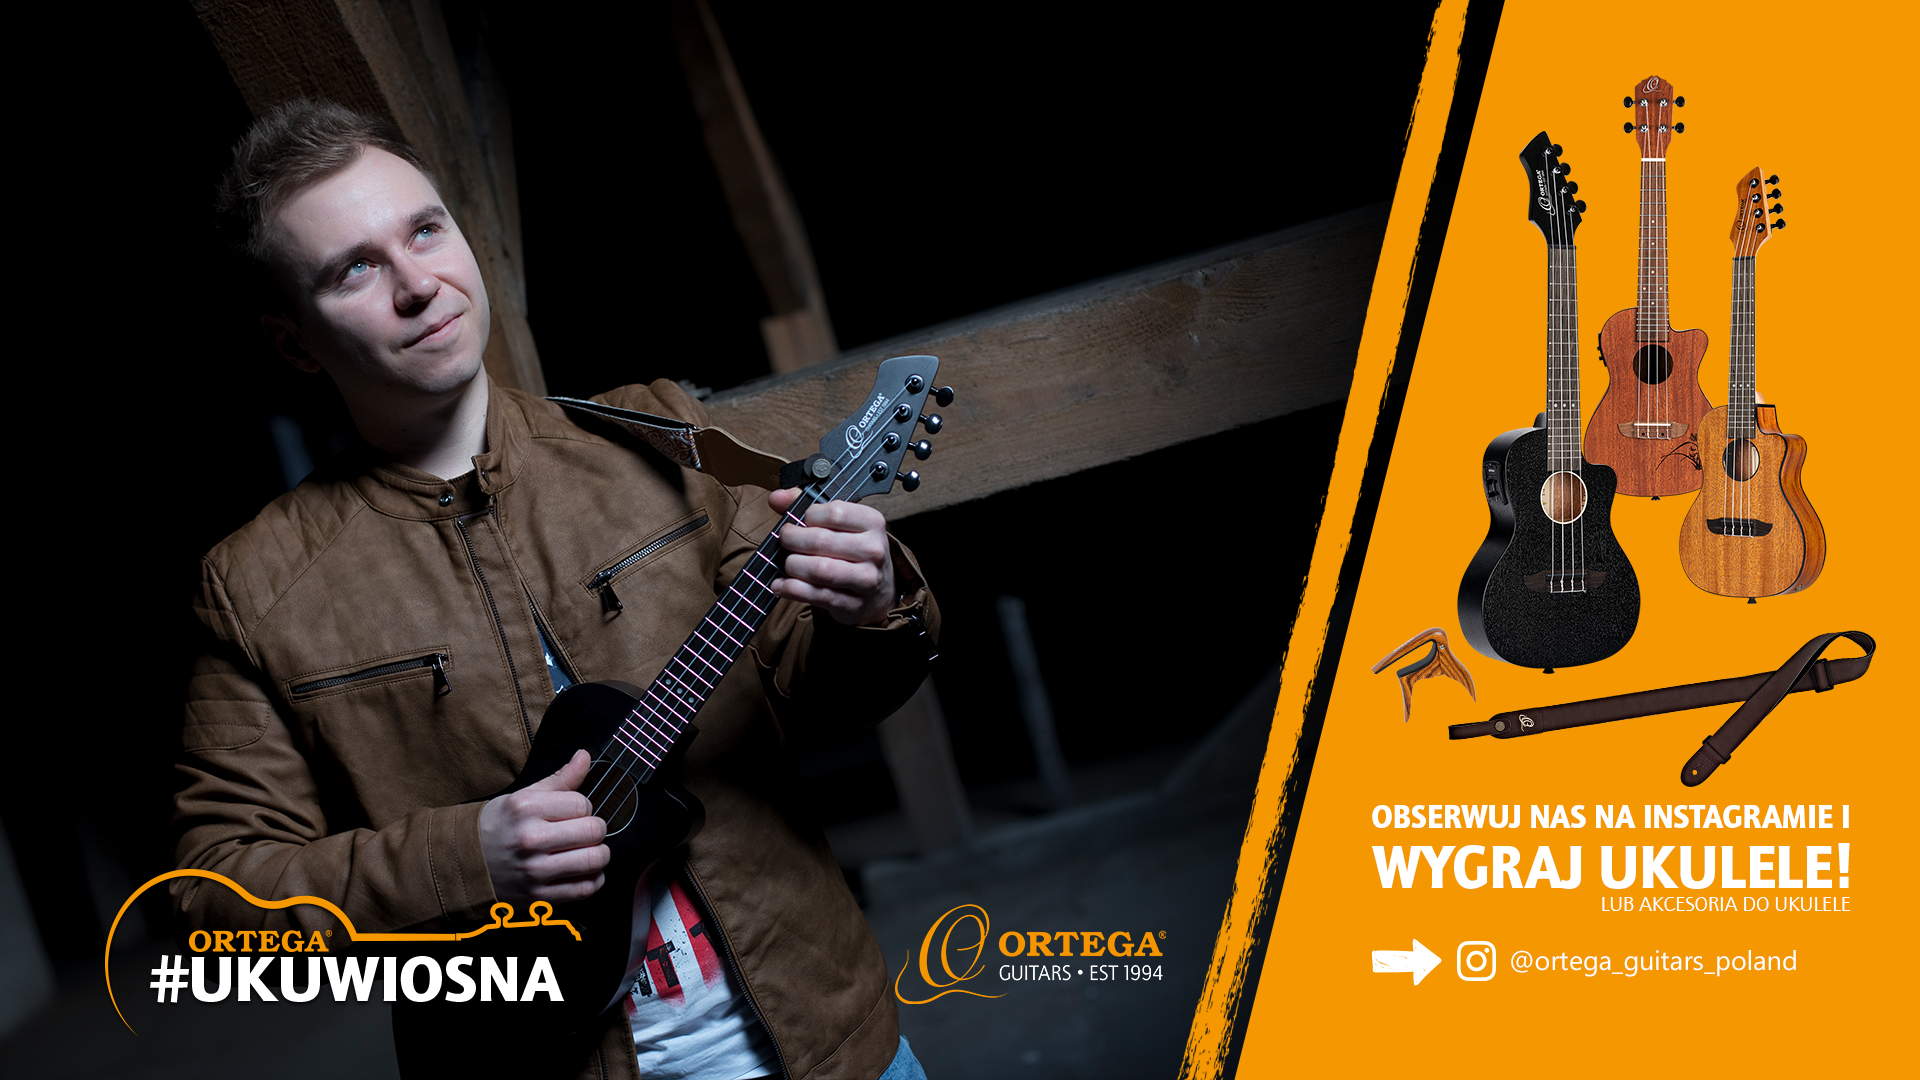 Ortega Guitars Polska i Wojtek „Griper“ Frąckowiak zapraszają #UKUWIOSNA na konkurs z nagrodami